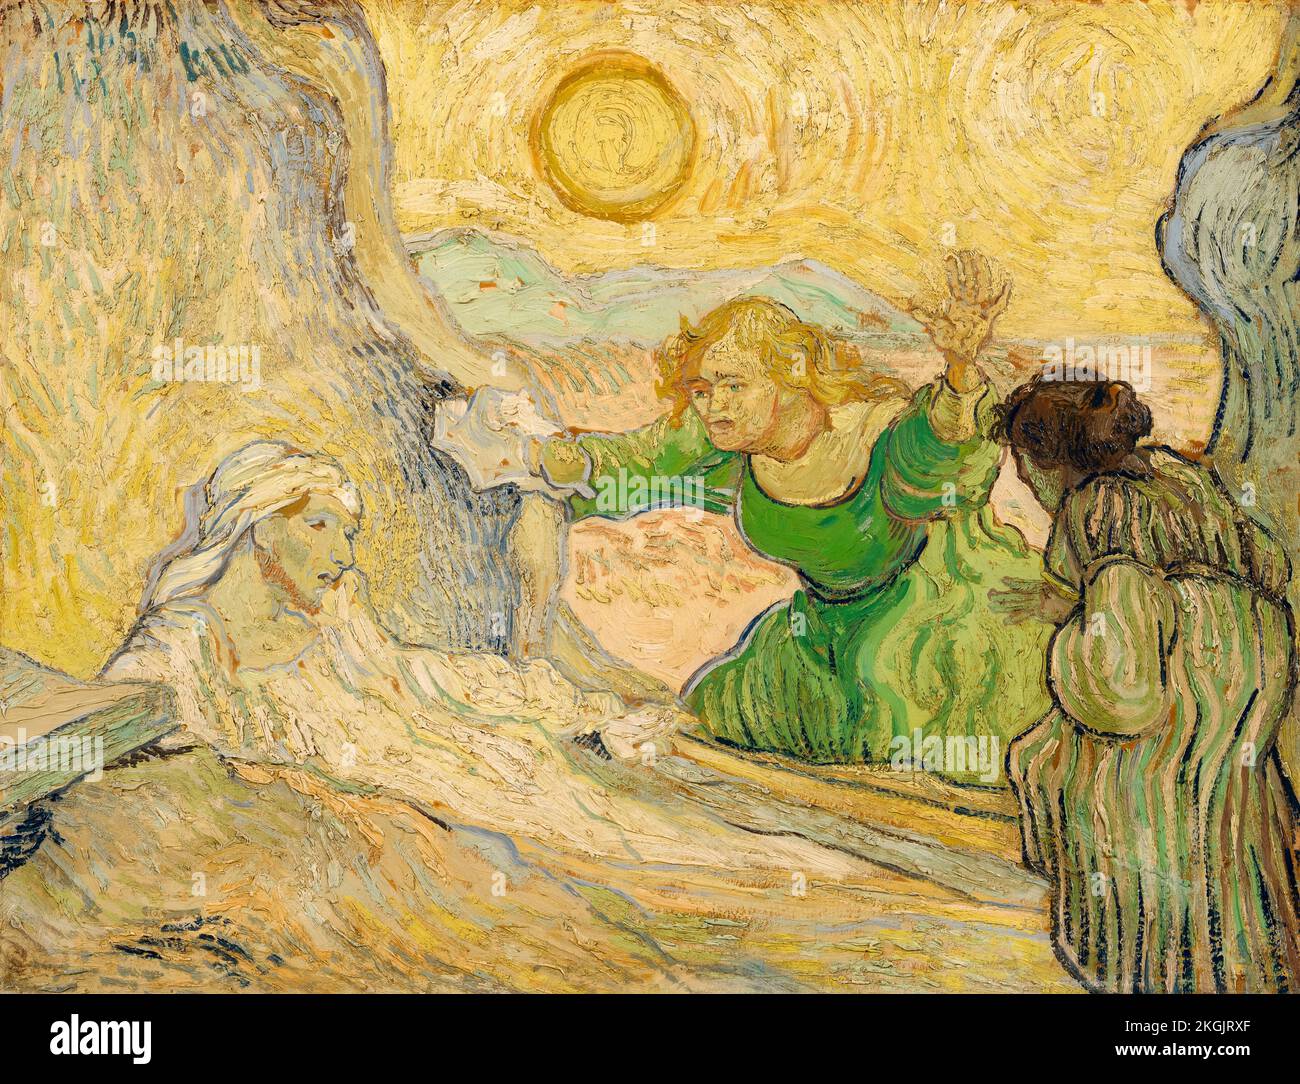 Vincent van Gogh, l'élévation de Lazarus (après Rembrandt), peinture dans l'huile sur toile, 1890 Banque D'Images